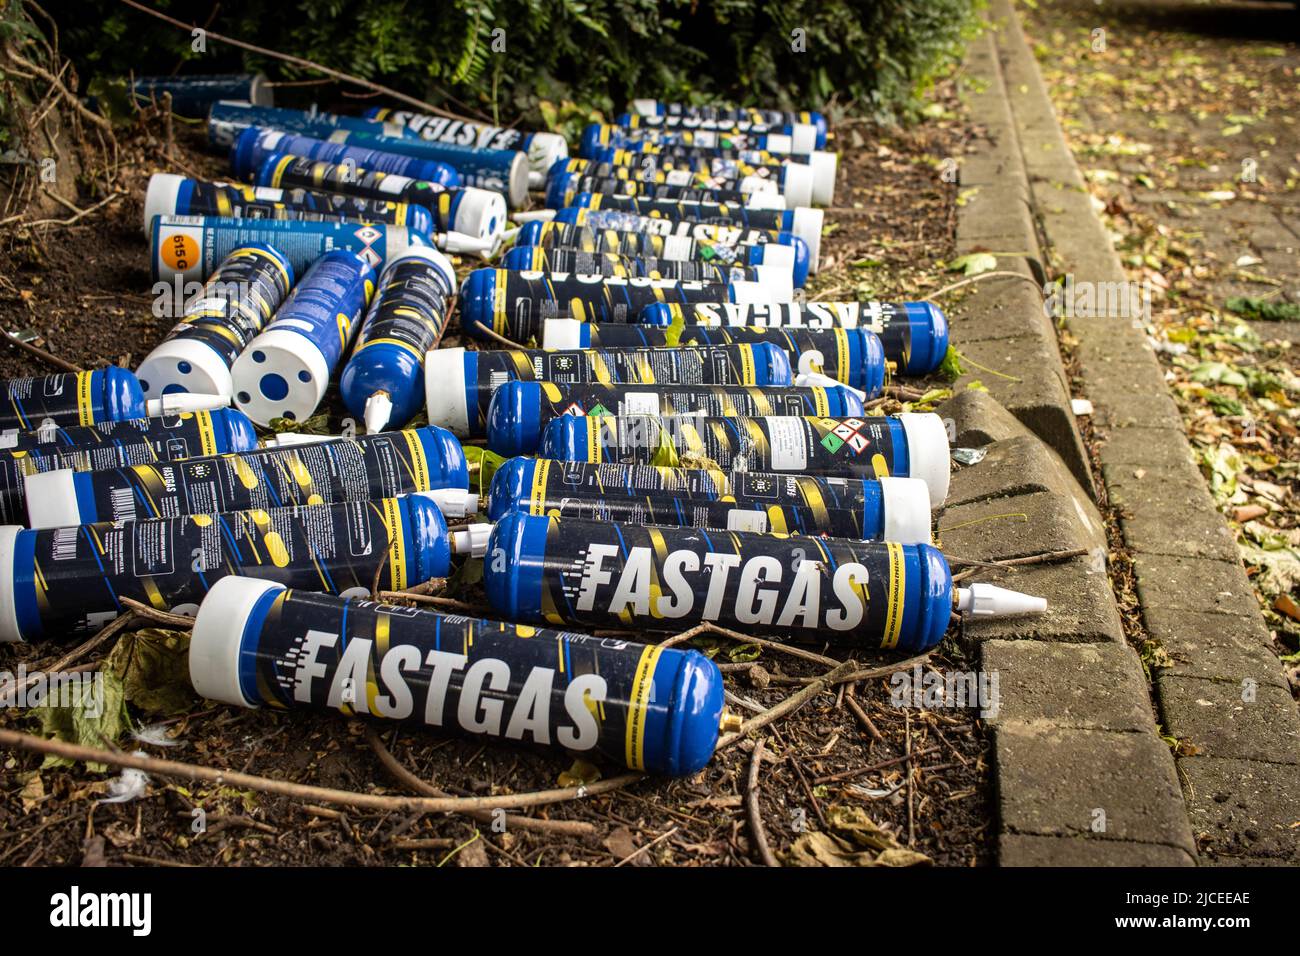 Grandes latas de 'Fastgas' óxido nitroso (N2O) se desecharon en una calle de Bristol Foto de stock